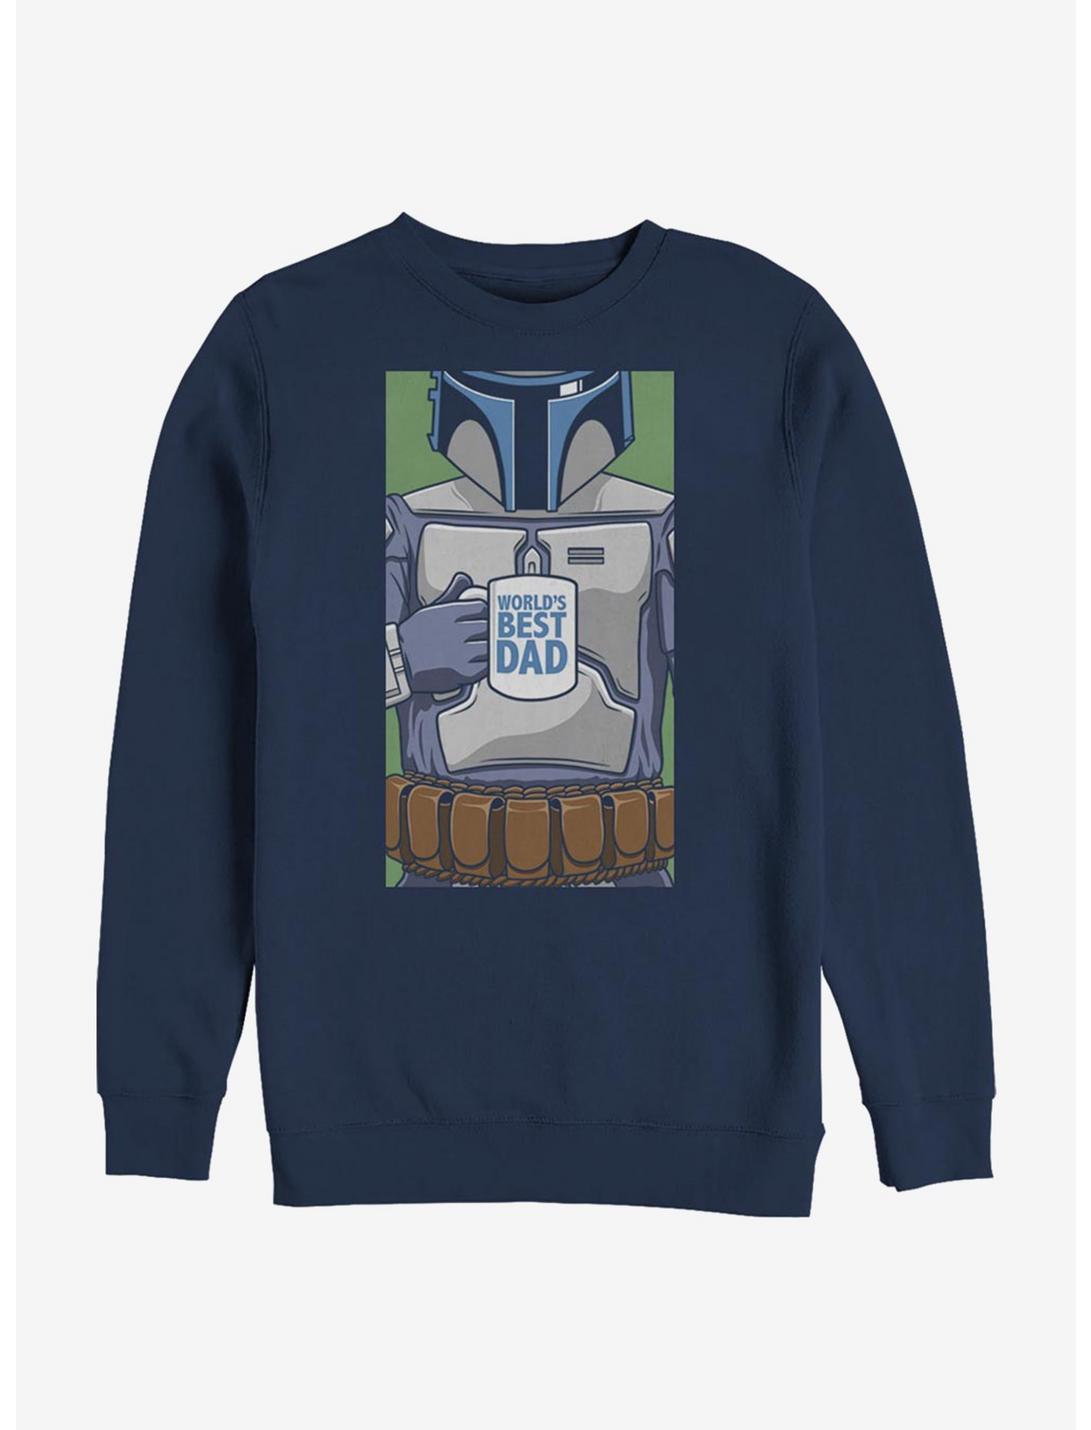 Star Wars Worlds Best Dad Sweatshirt, NAVY, hi-res